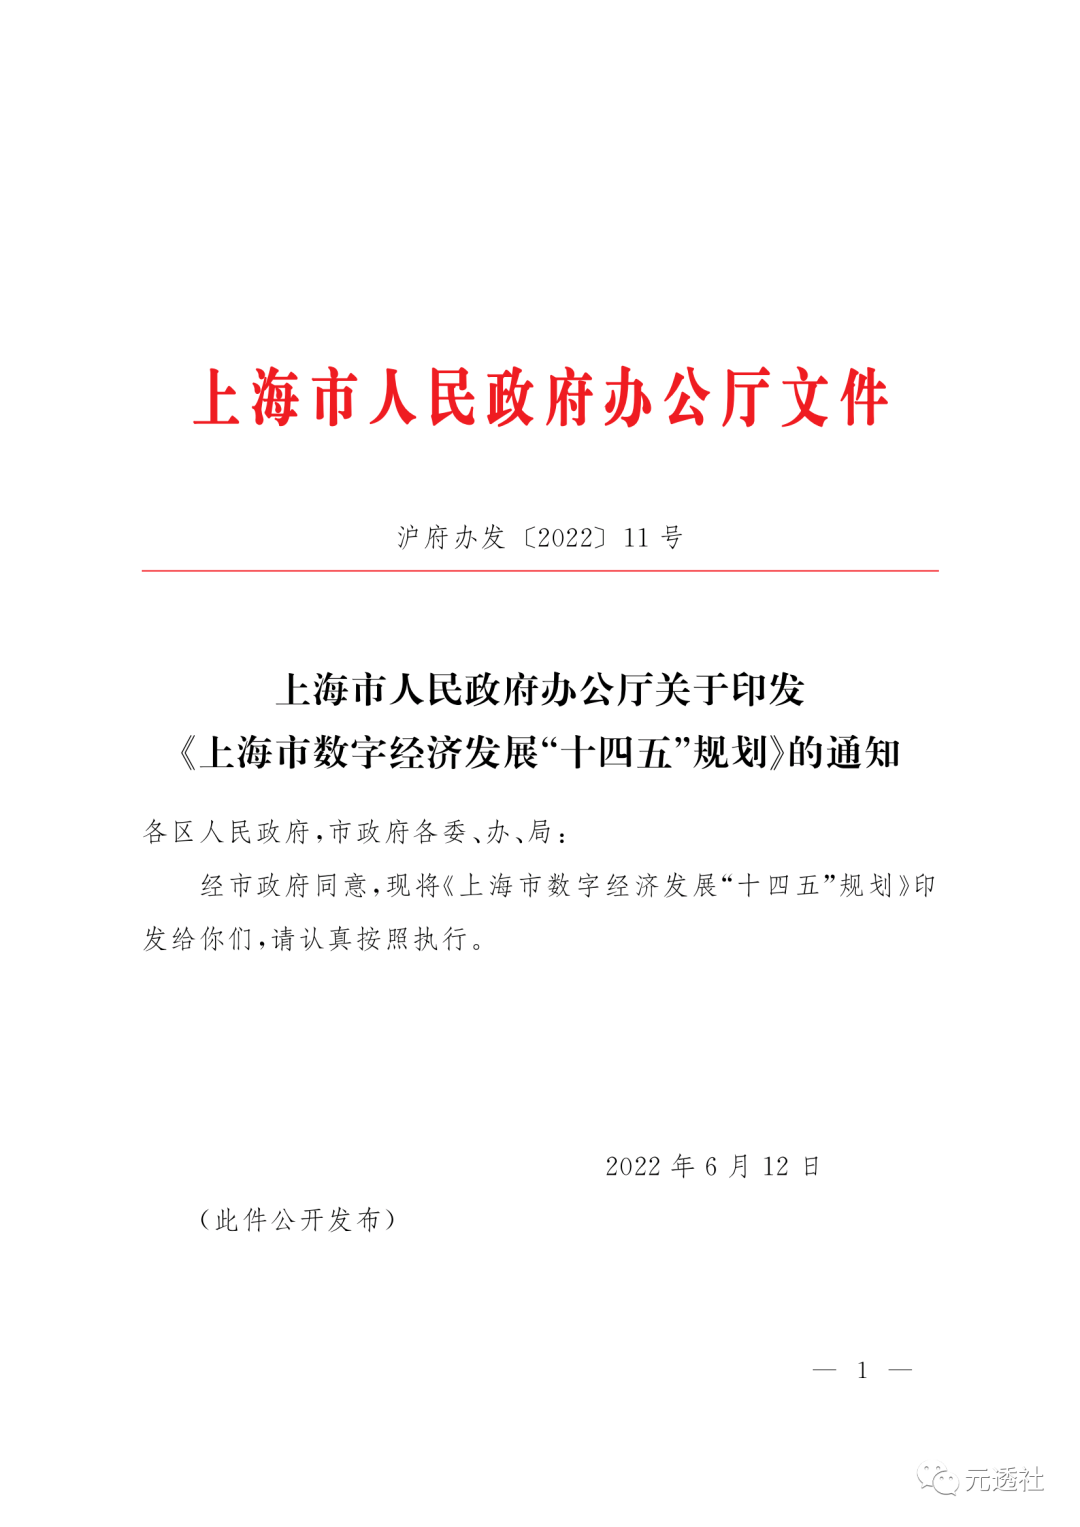 上海市人民政府:支持龙头企业探索NFT交易平台建设